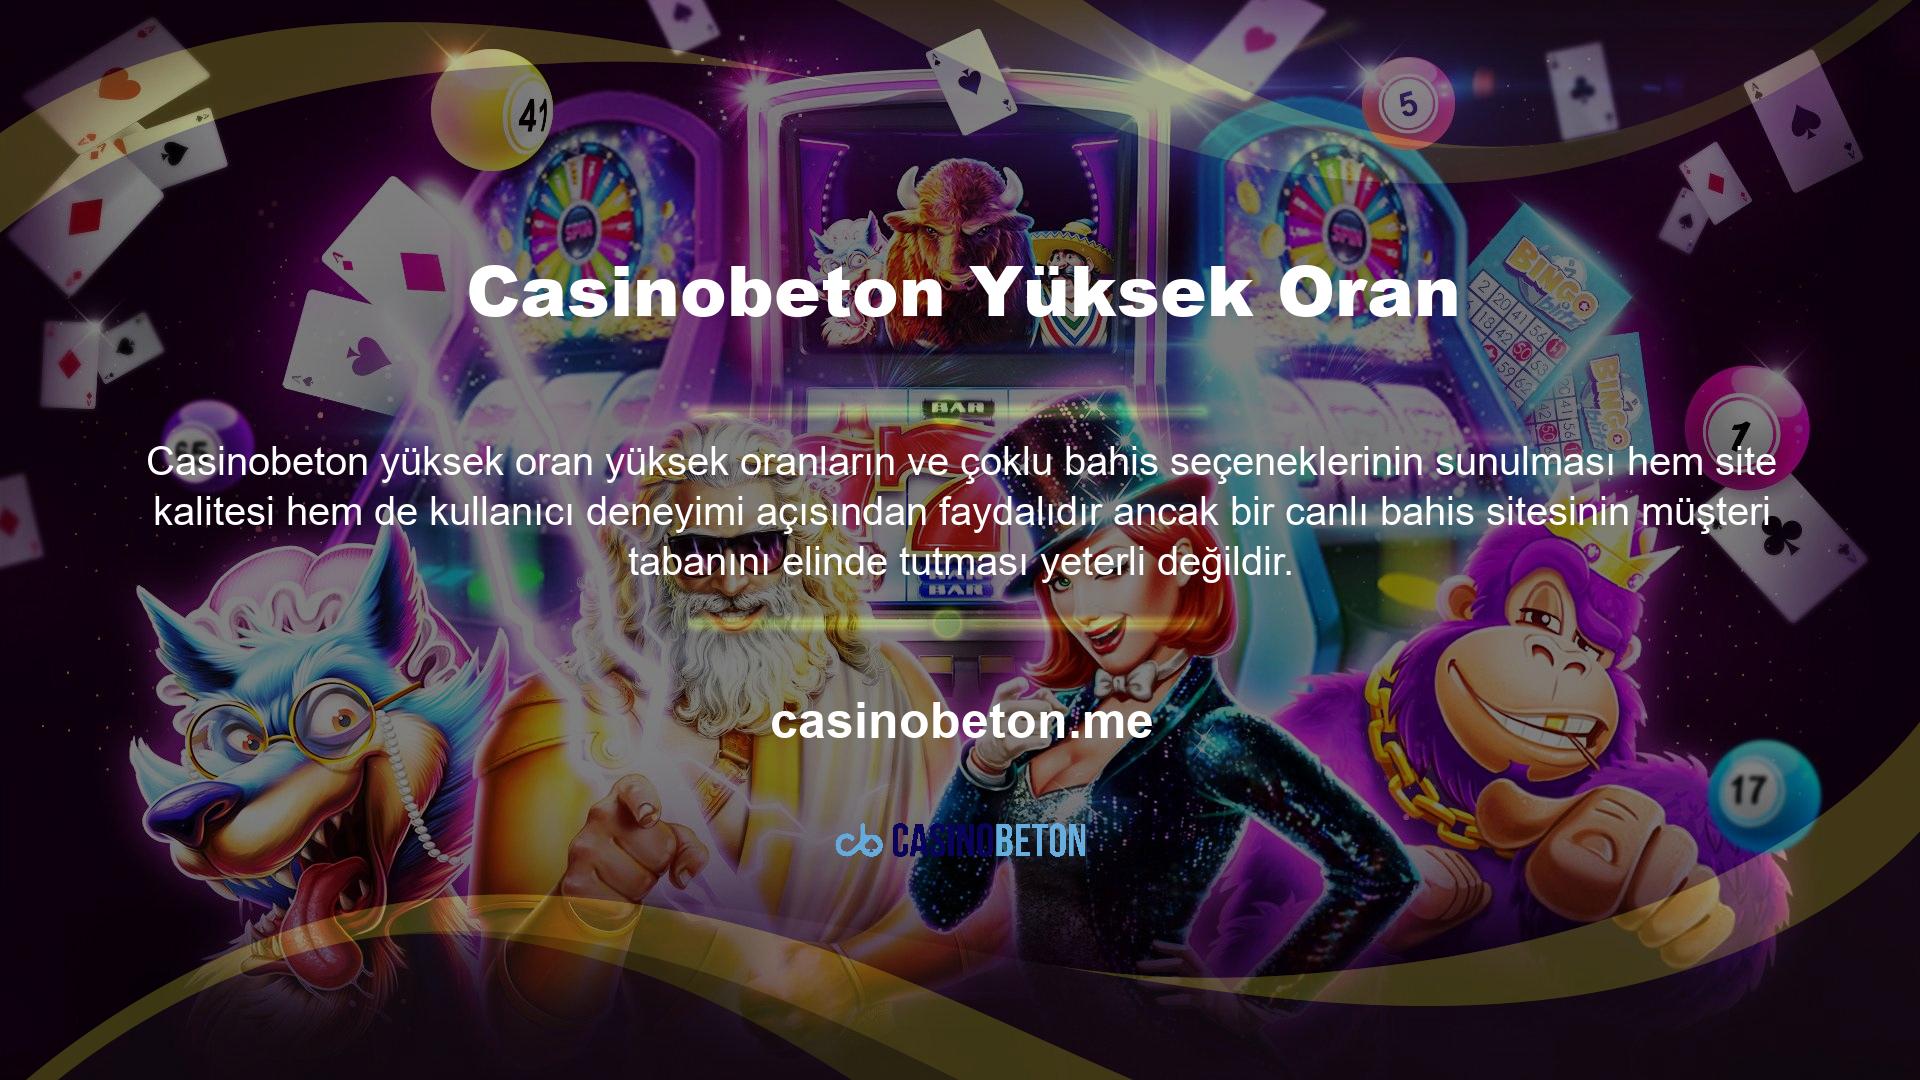 Bahis sitesi Casinobeton, müşterilerine yüksek oranlarda kazanılan kazançların istenildiği zaman çekilebileceğini garanti eden premium bir sitede bahis oynama ve oynama fırsatı sunuyor